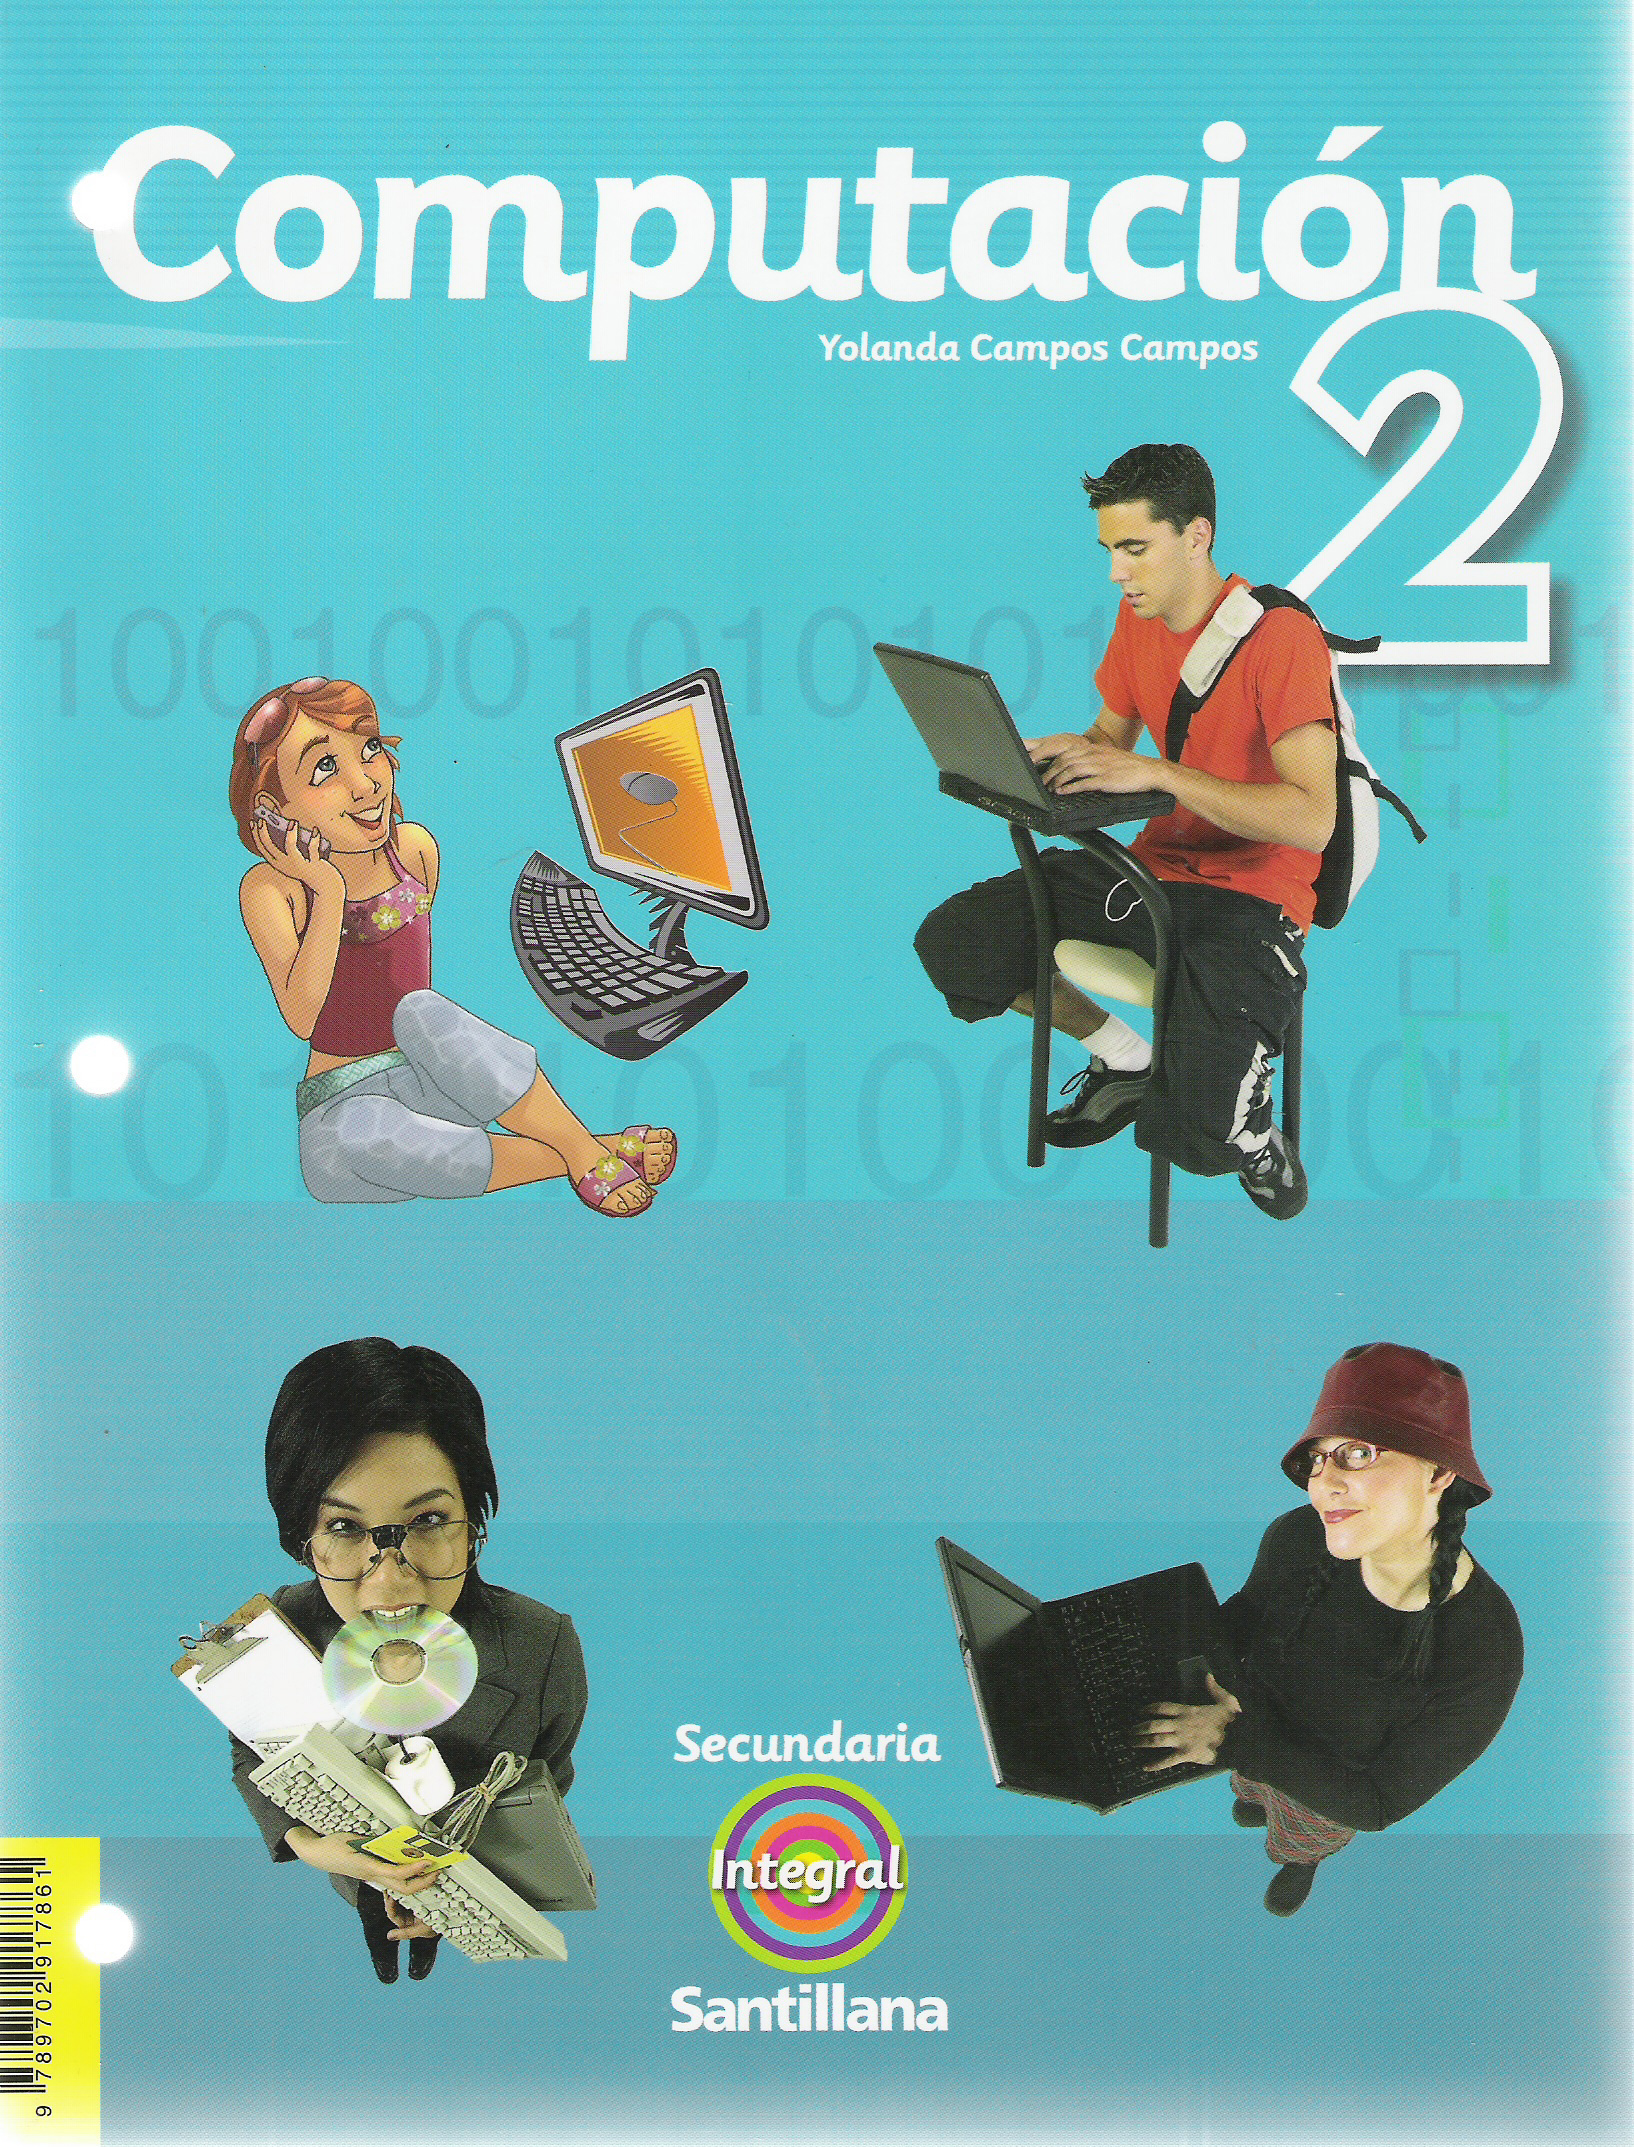 Computacion2